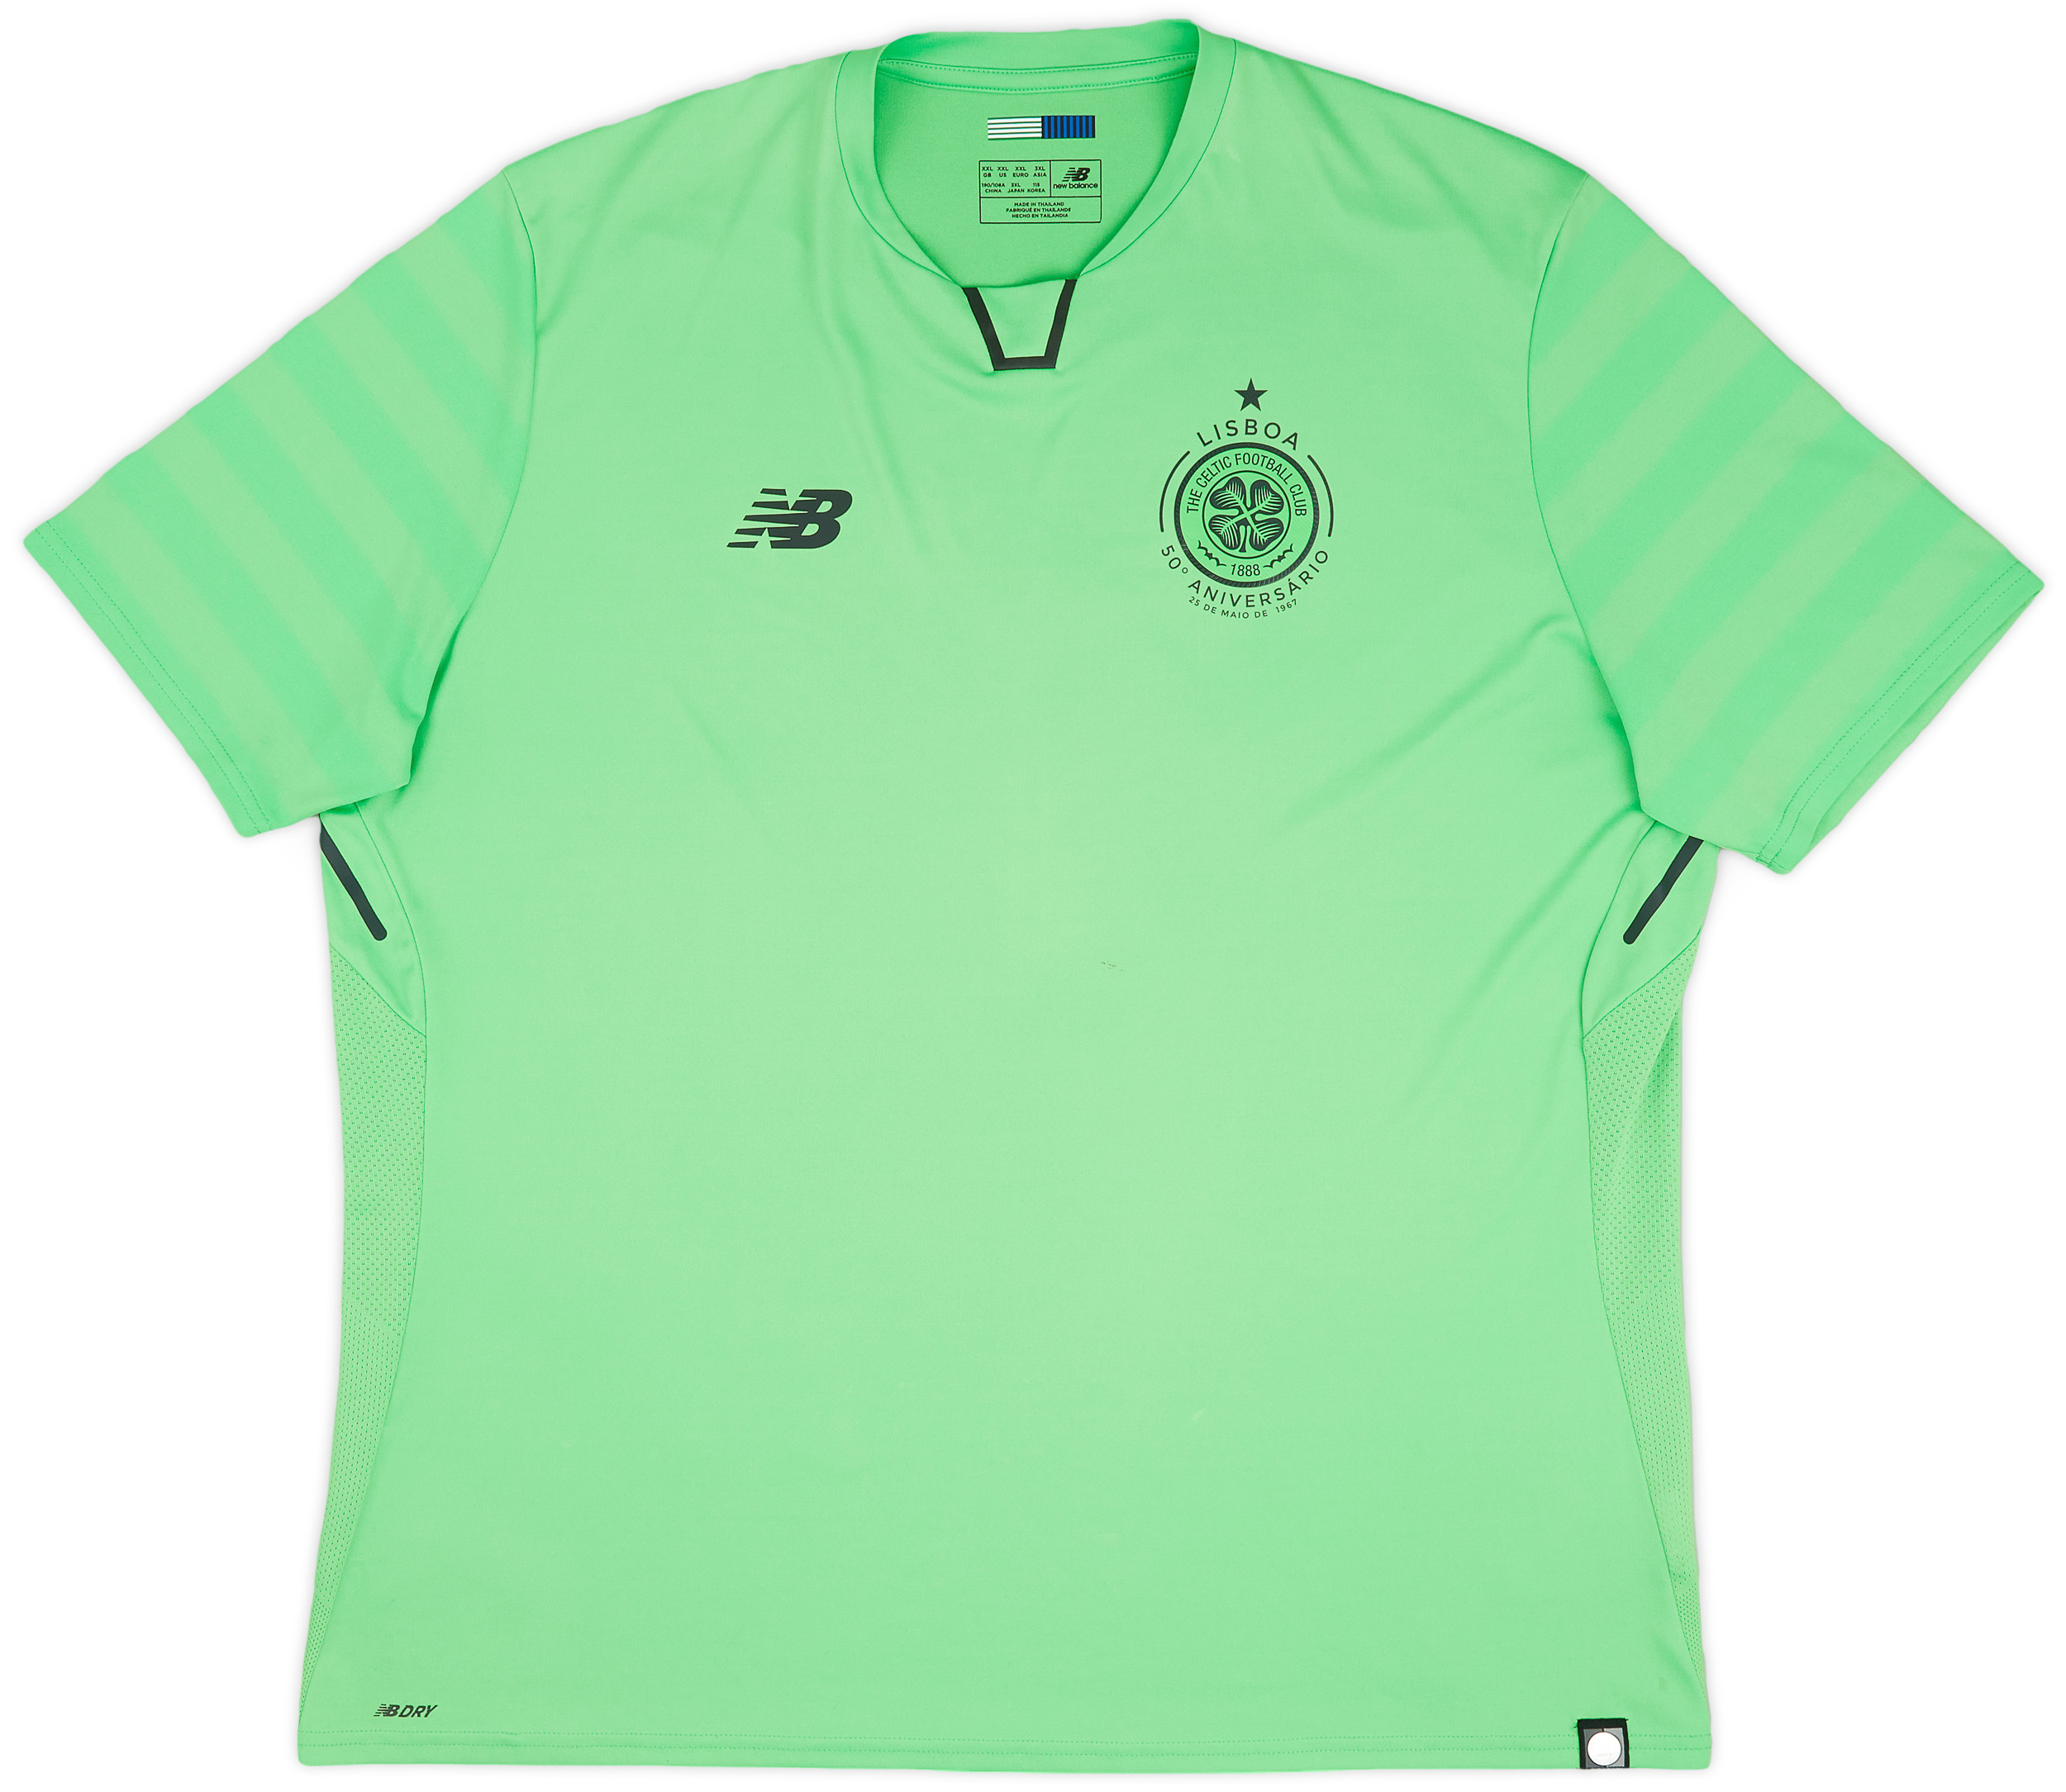 Retro Celtic Shirt